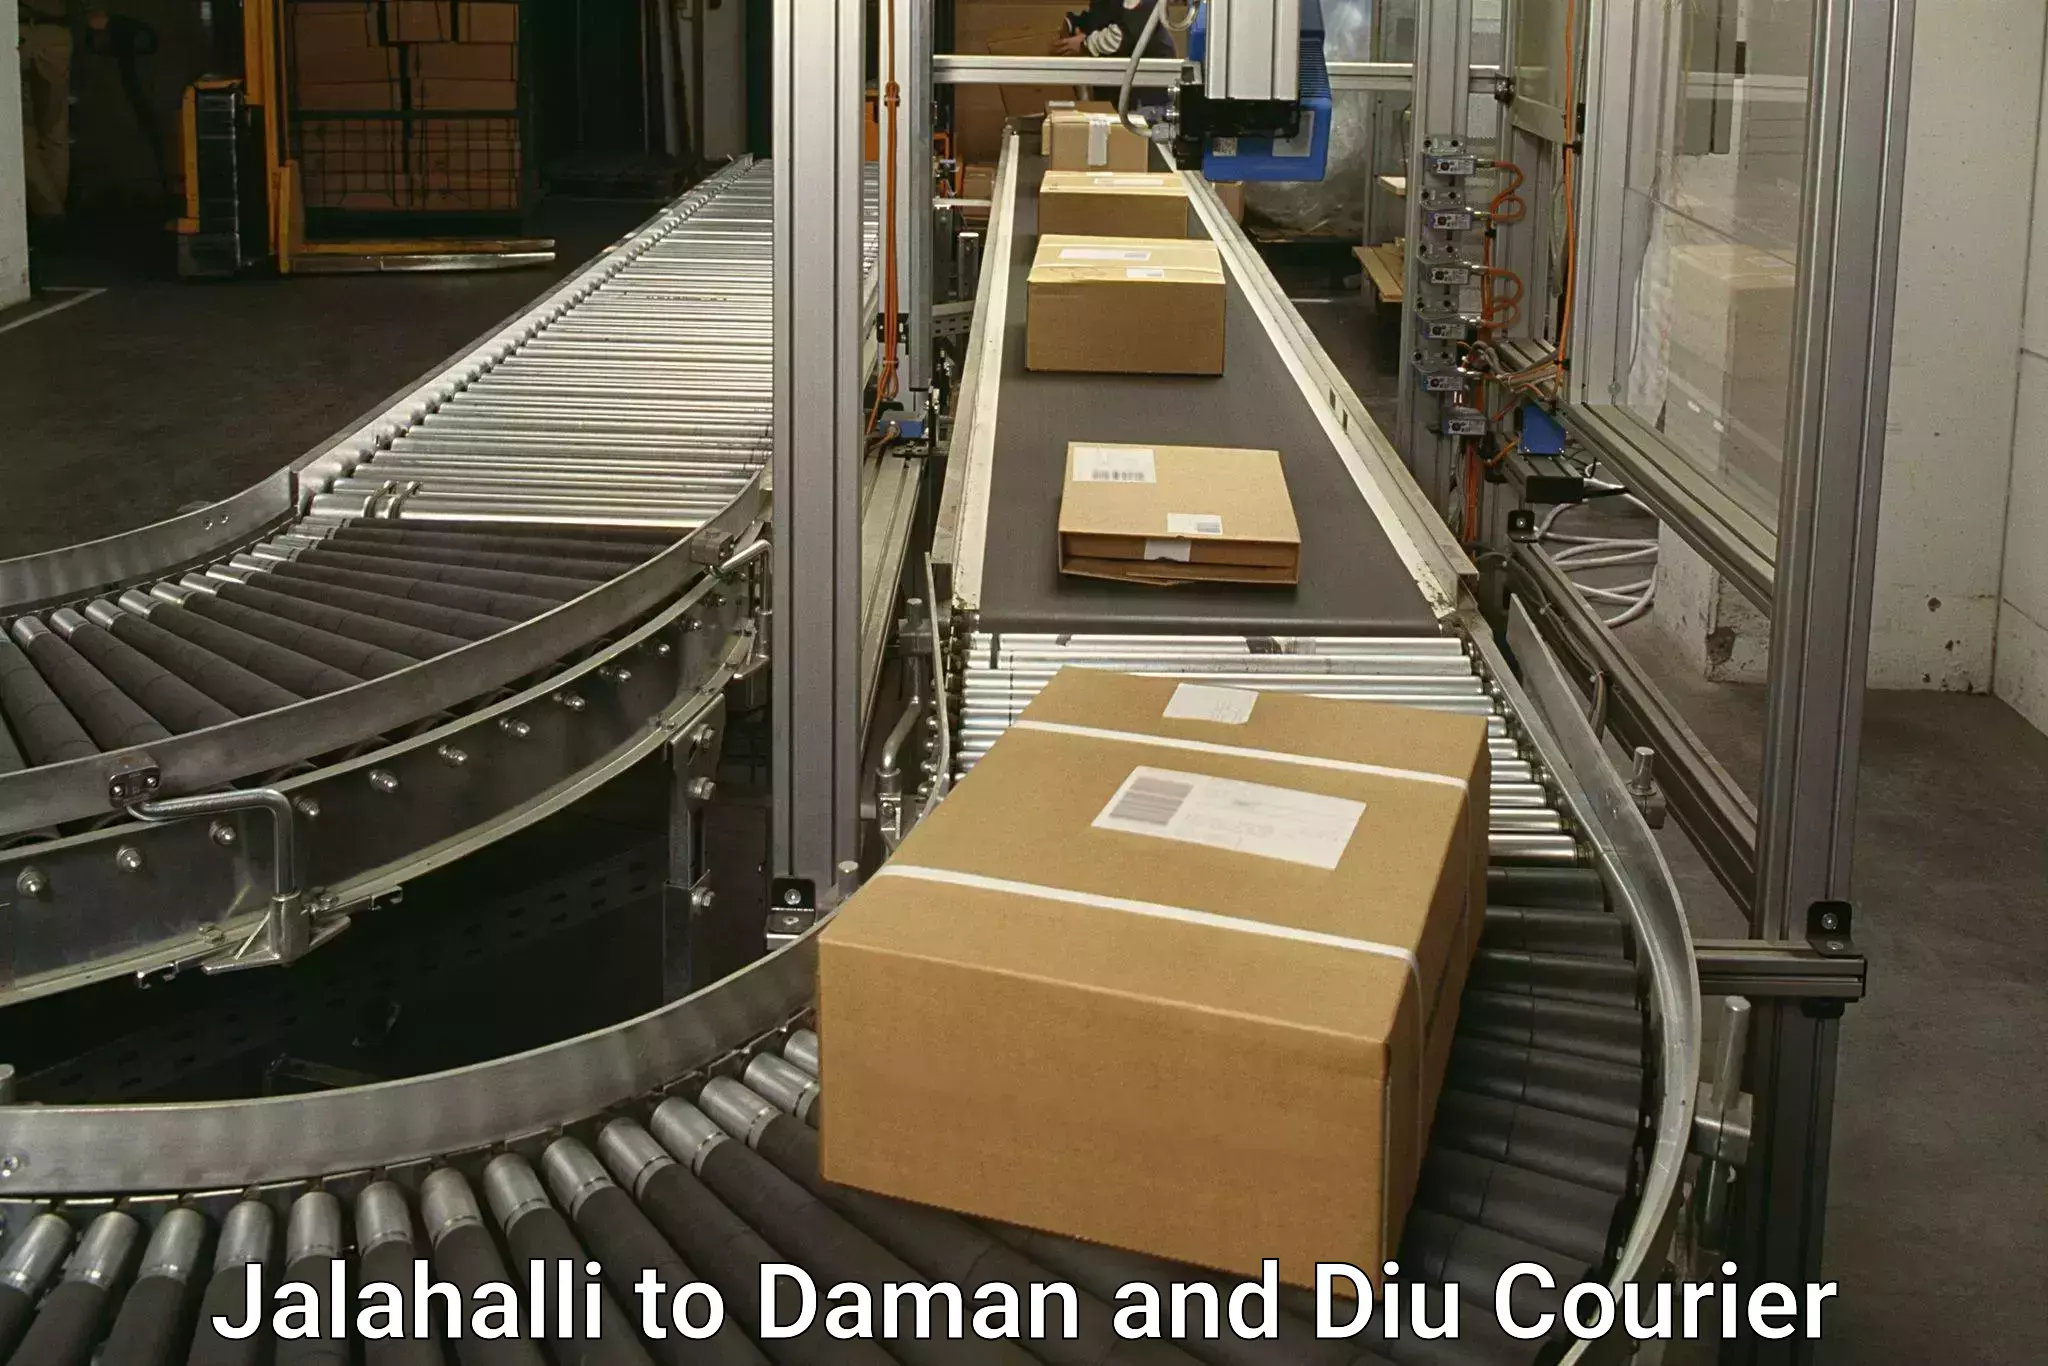 Automated parcel services Jalahalli to Daman and Diu